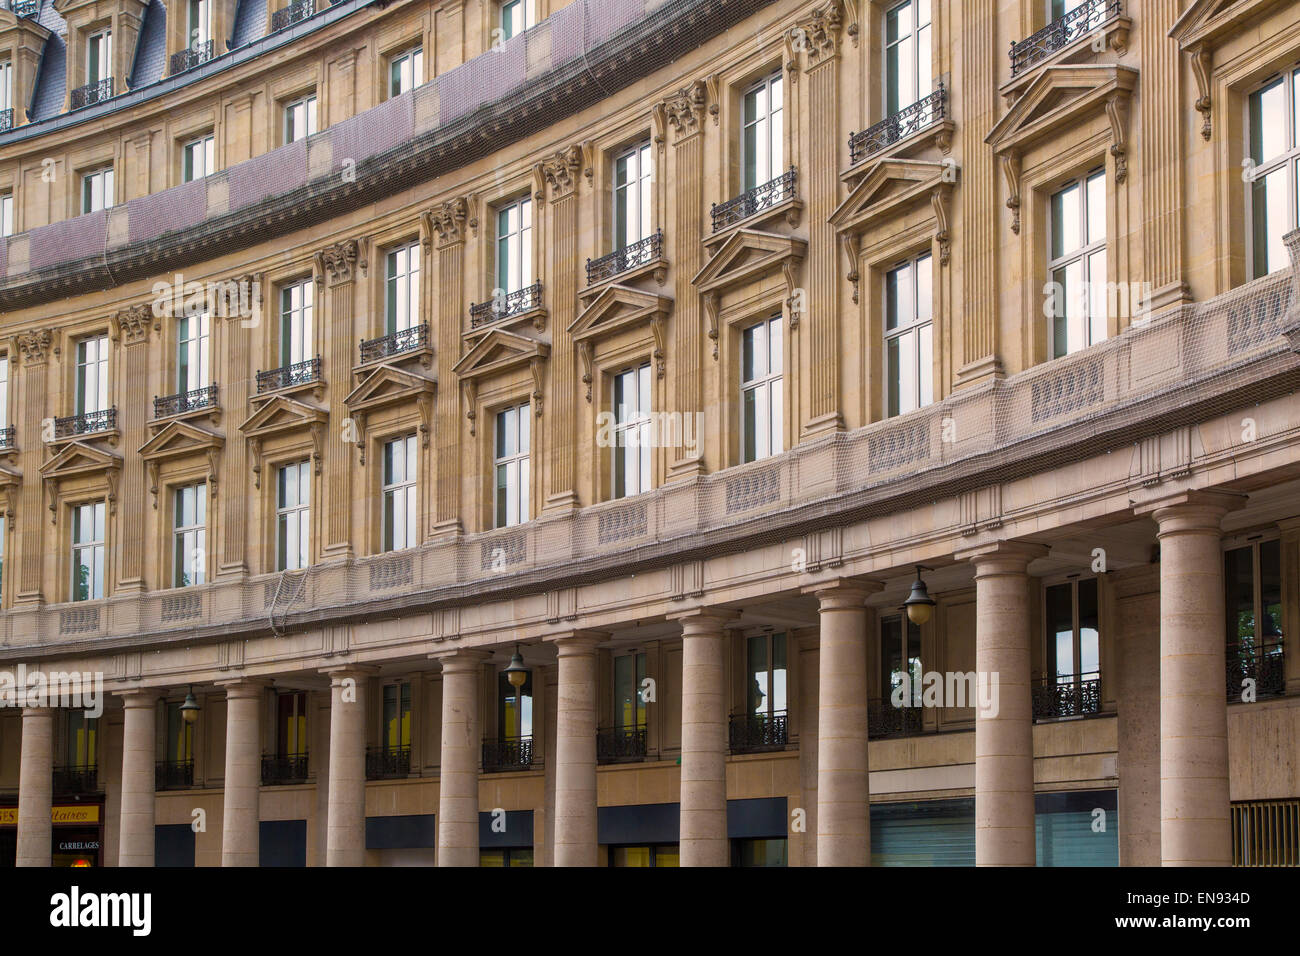 Curved building adjacent to Bourse de Commerce along Rue de Viarmes, Paris, France Stock Photo